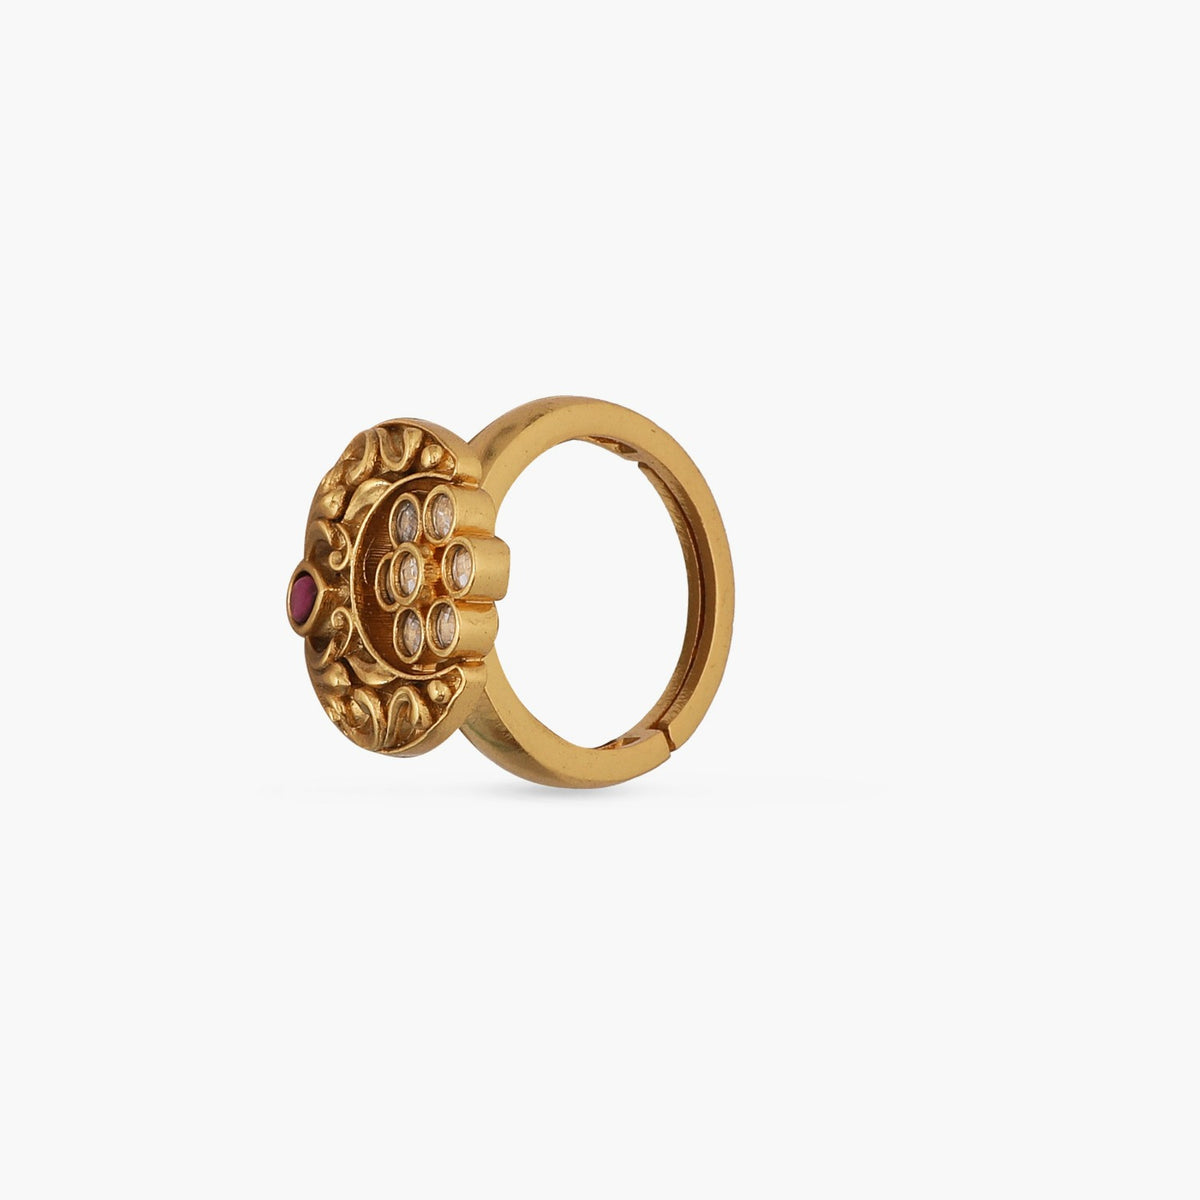 Classic Floral Crescent Antique Ring